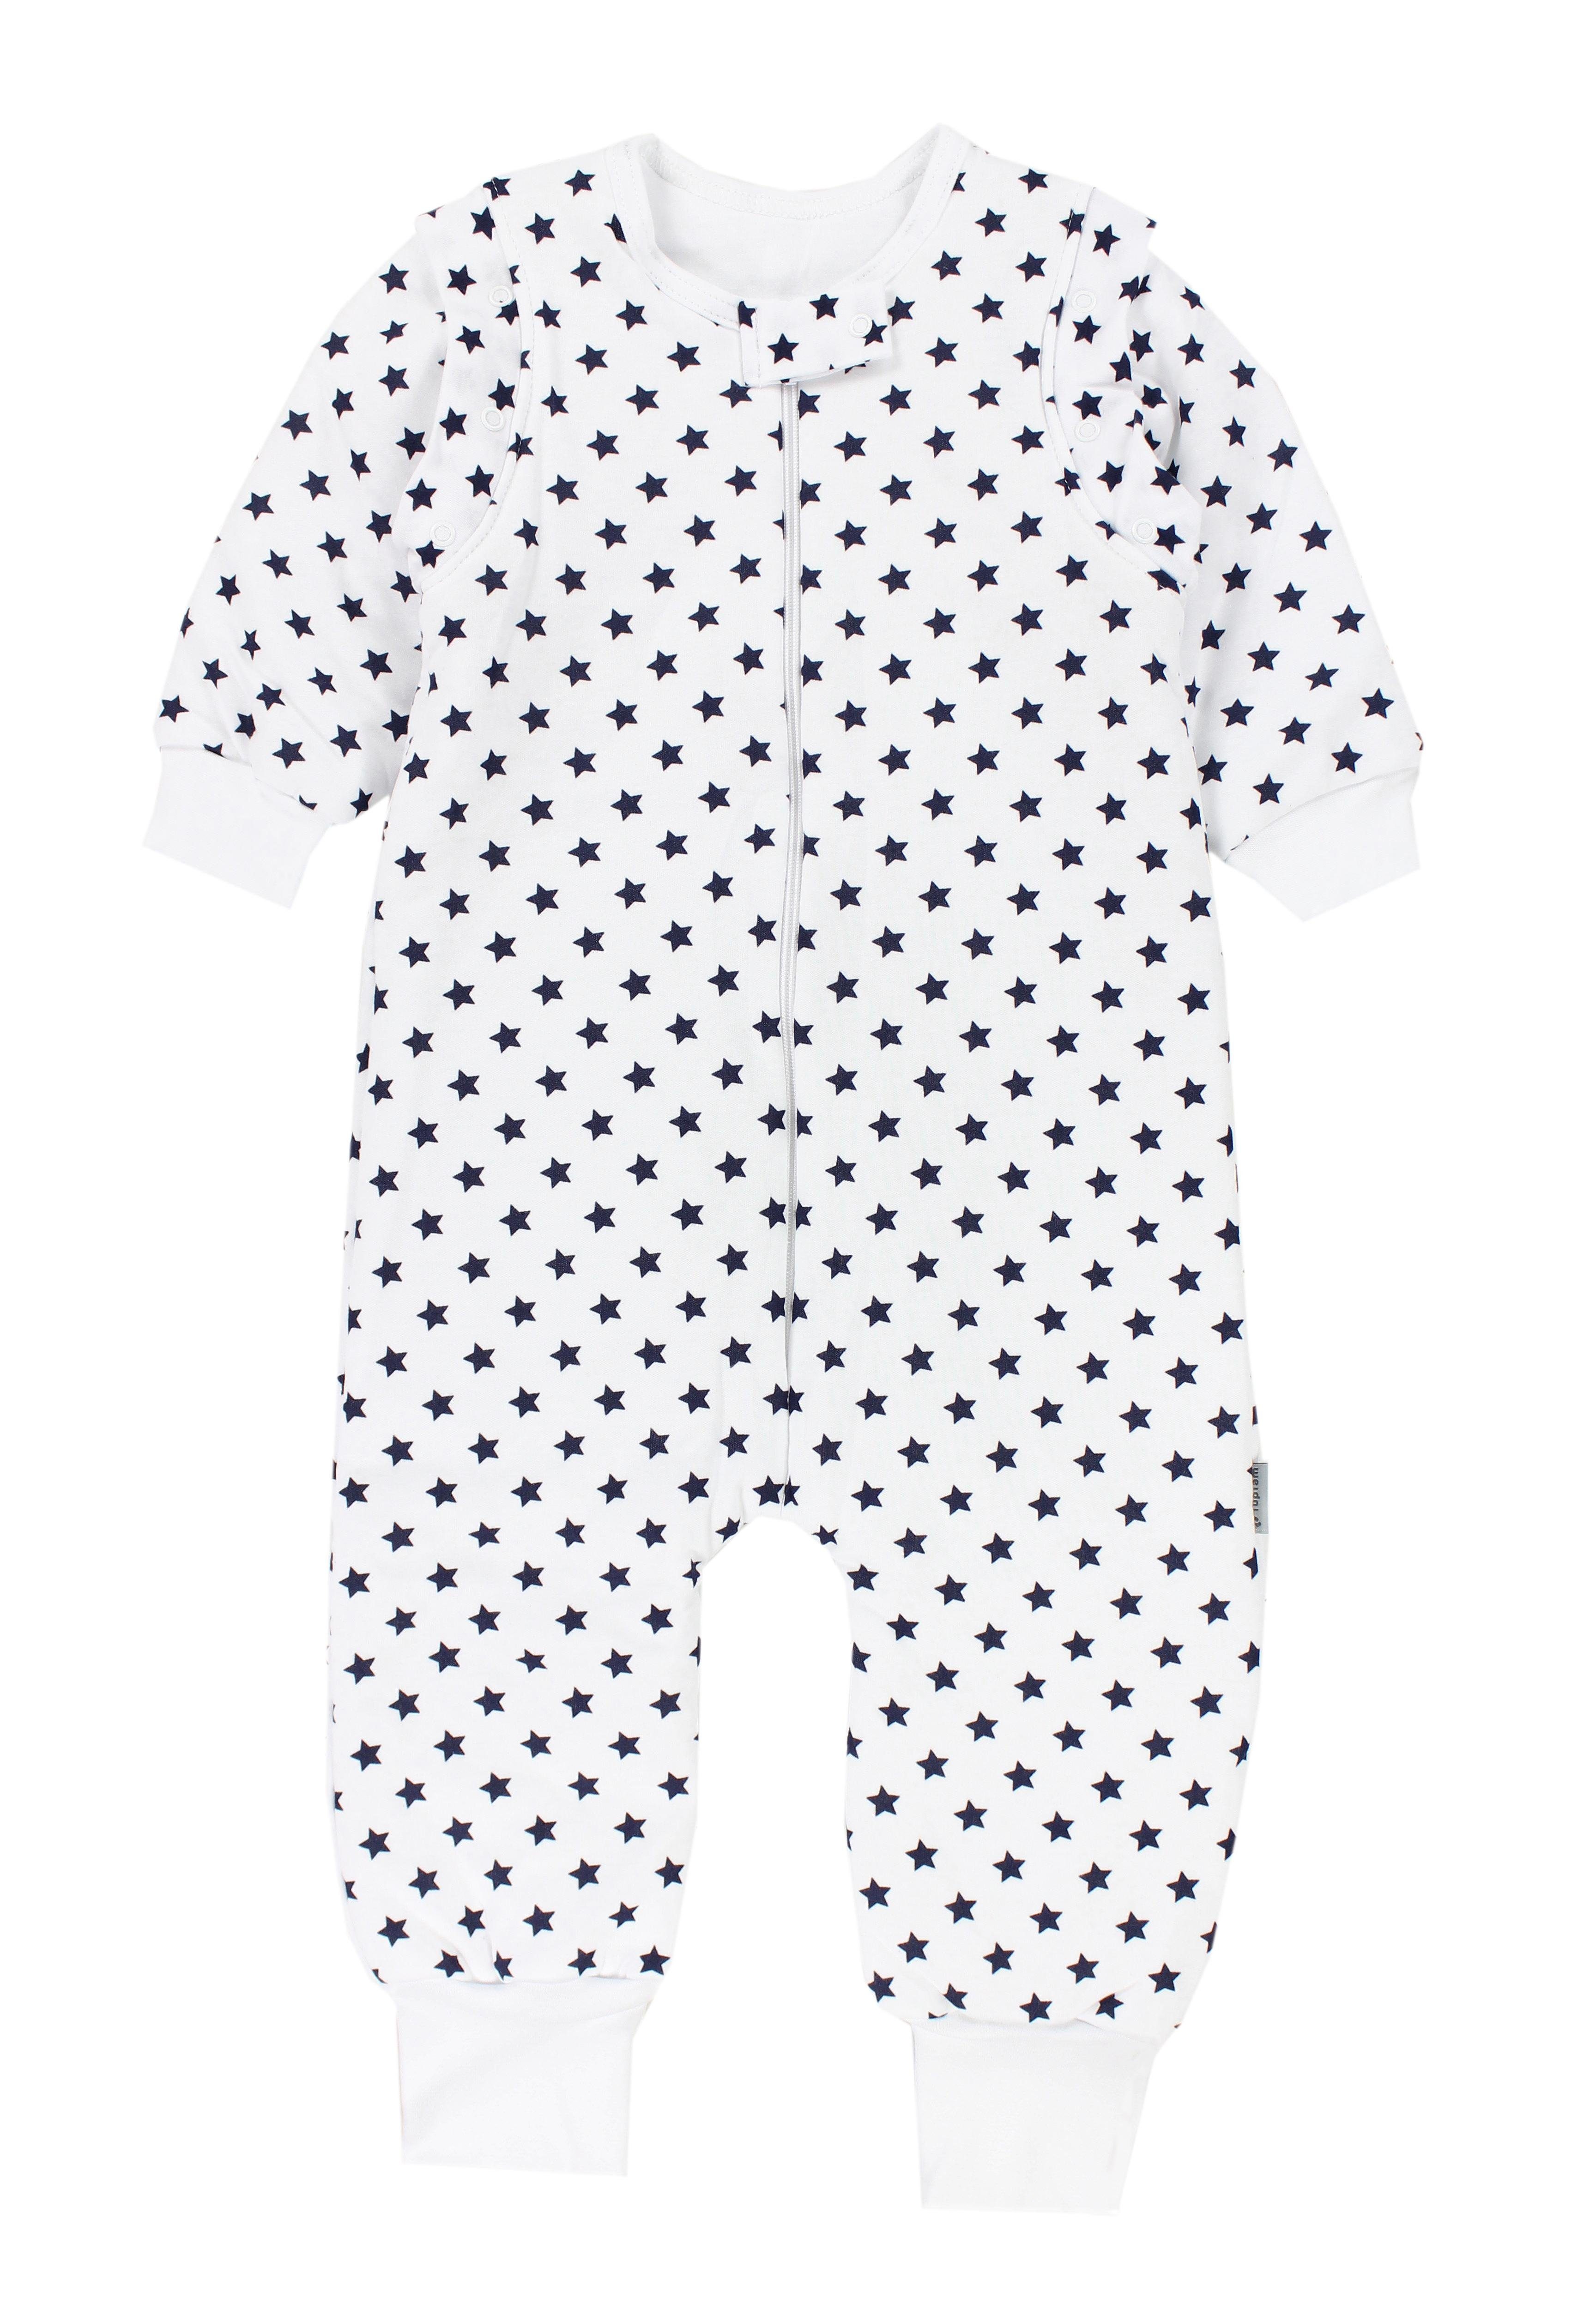 TupTam Babyschlafsack mit Beinen und Ärmel Winter OEKO-TEX zertifiziert Unisex Sterne Dunkelblau | Schlafsäcke